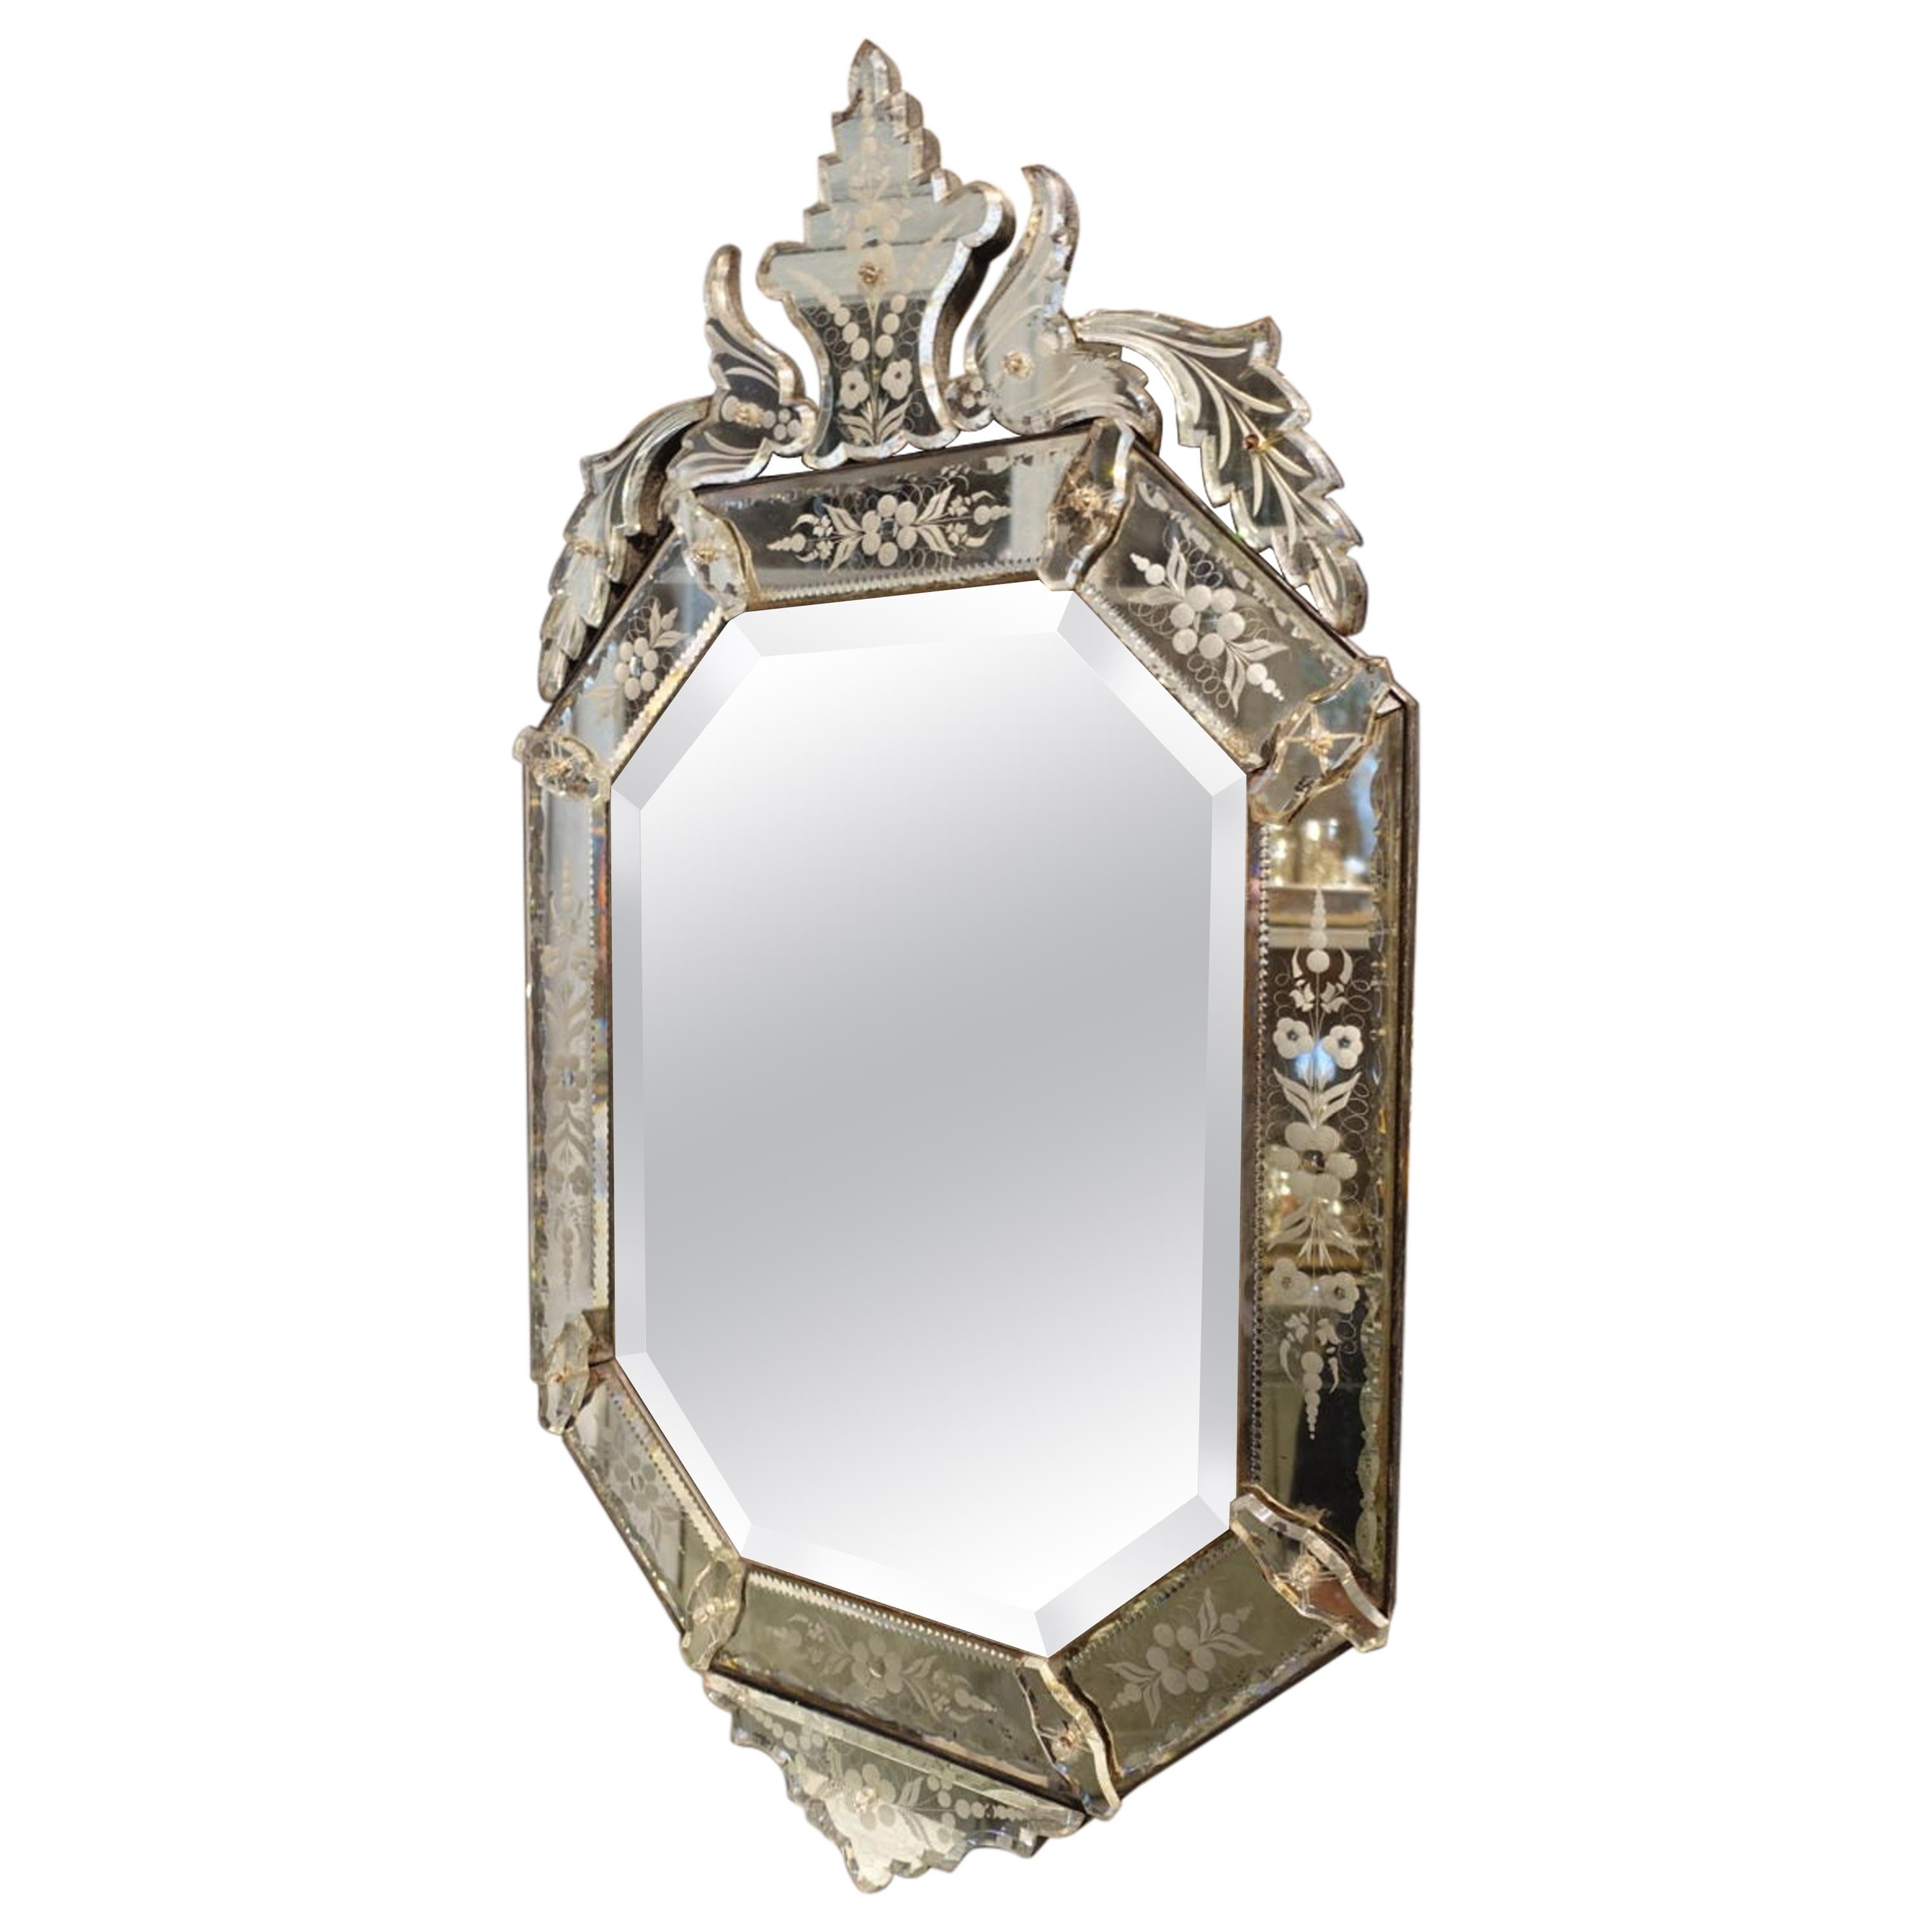 Gorgeous Ornate Topped Venetian Mirror